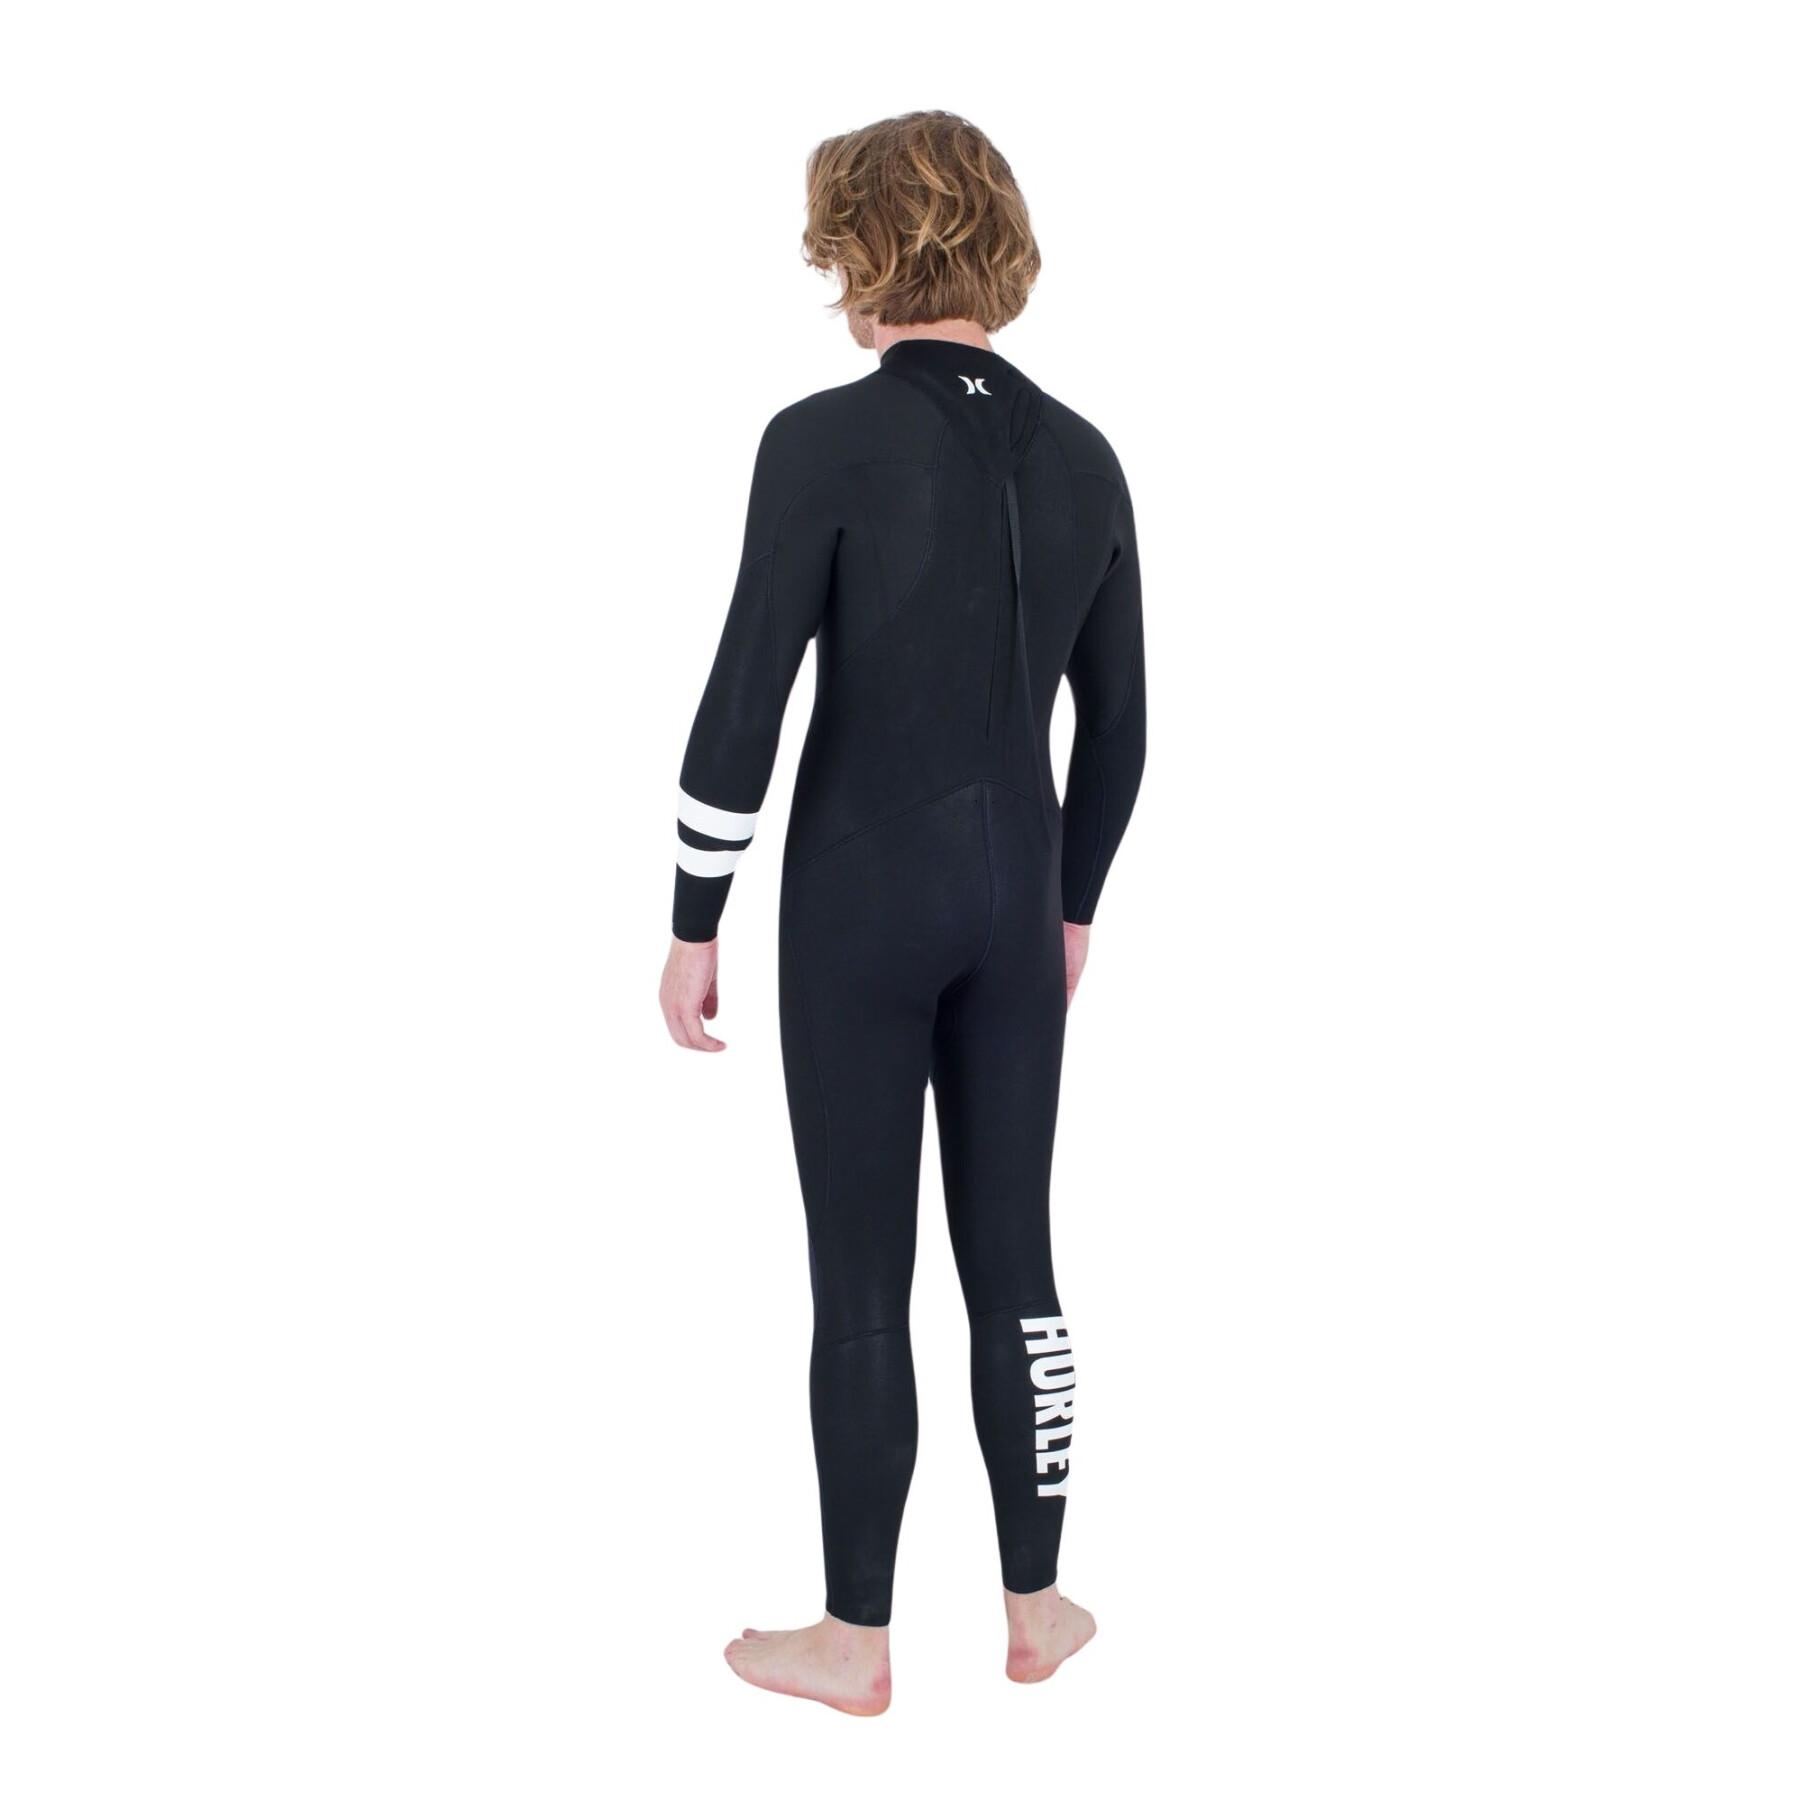 Surf suit Hurley Advant 4/3mm